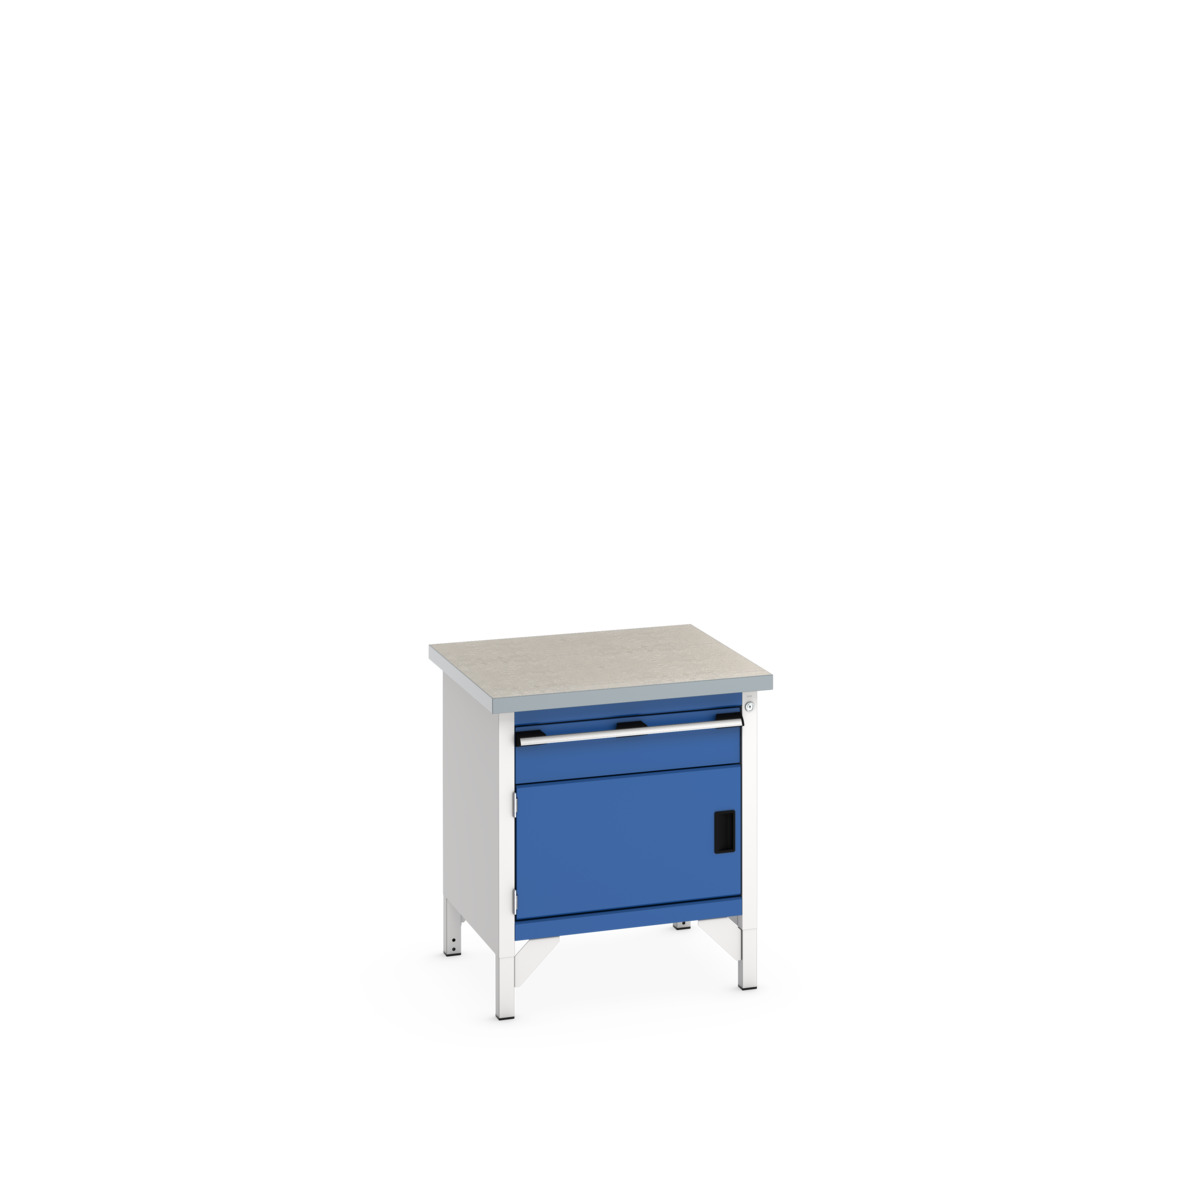 41002009.11V - cubio storage bench (lino)